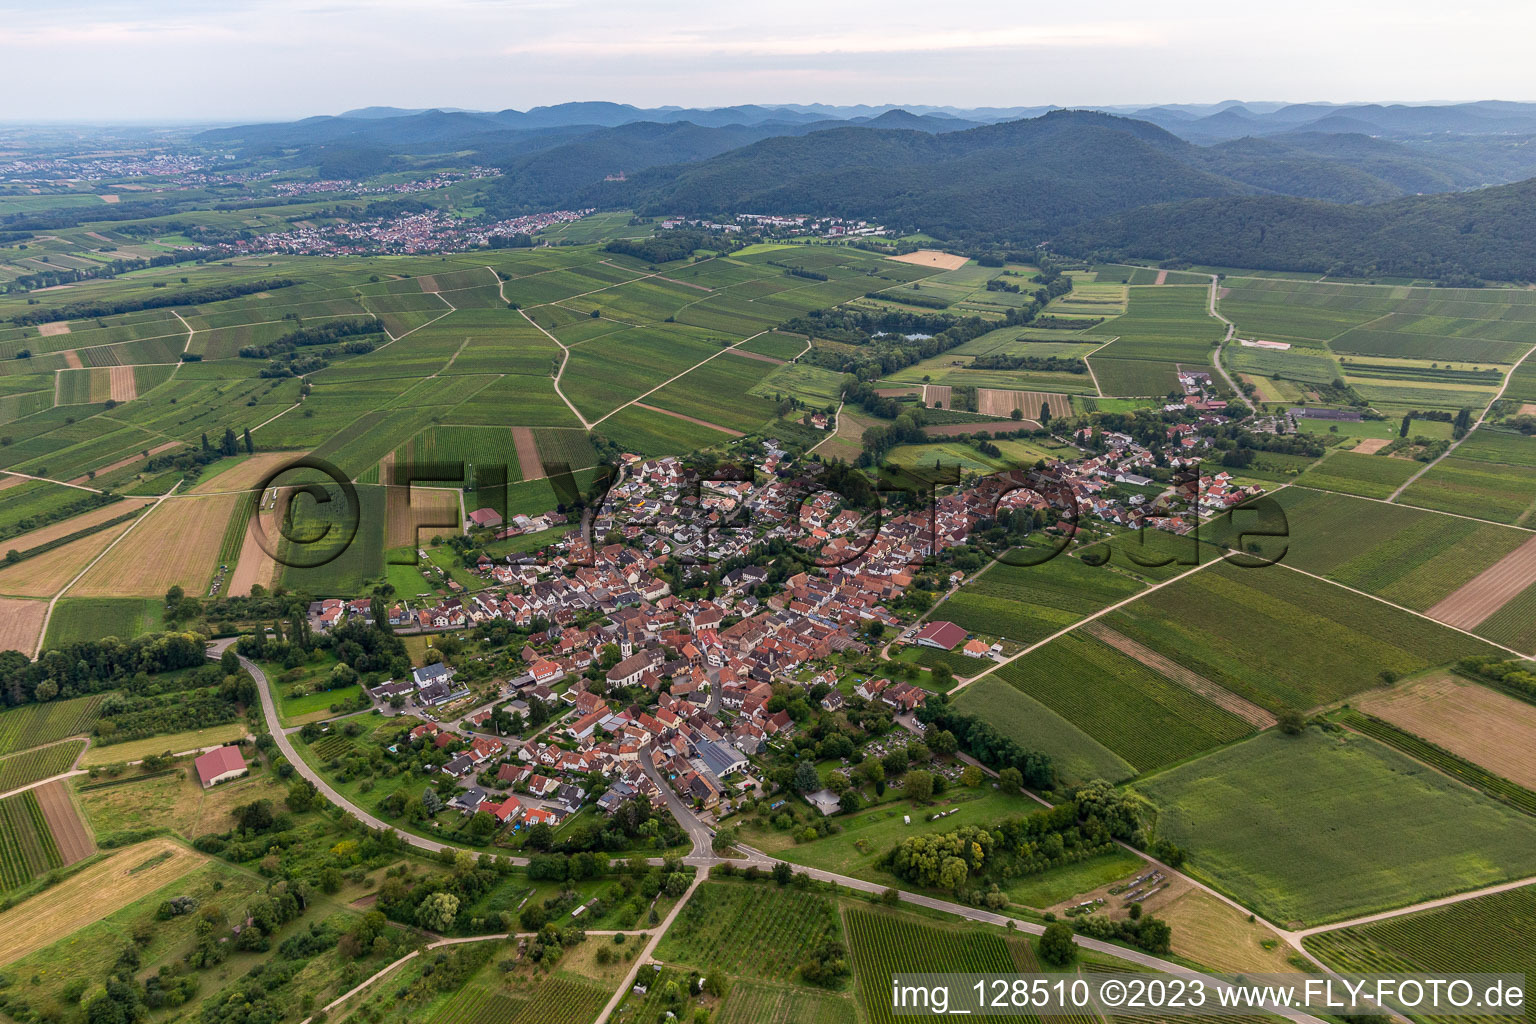 Göcklingen im Bundesland Rheinland-Pfalz, Deutschland von der Drohne aus gesehen